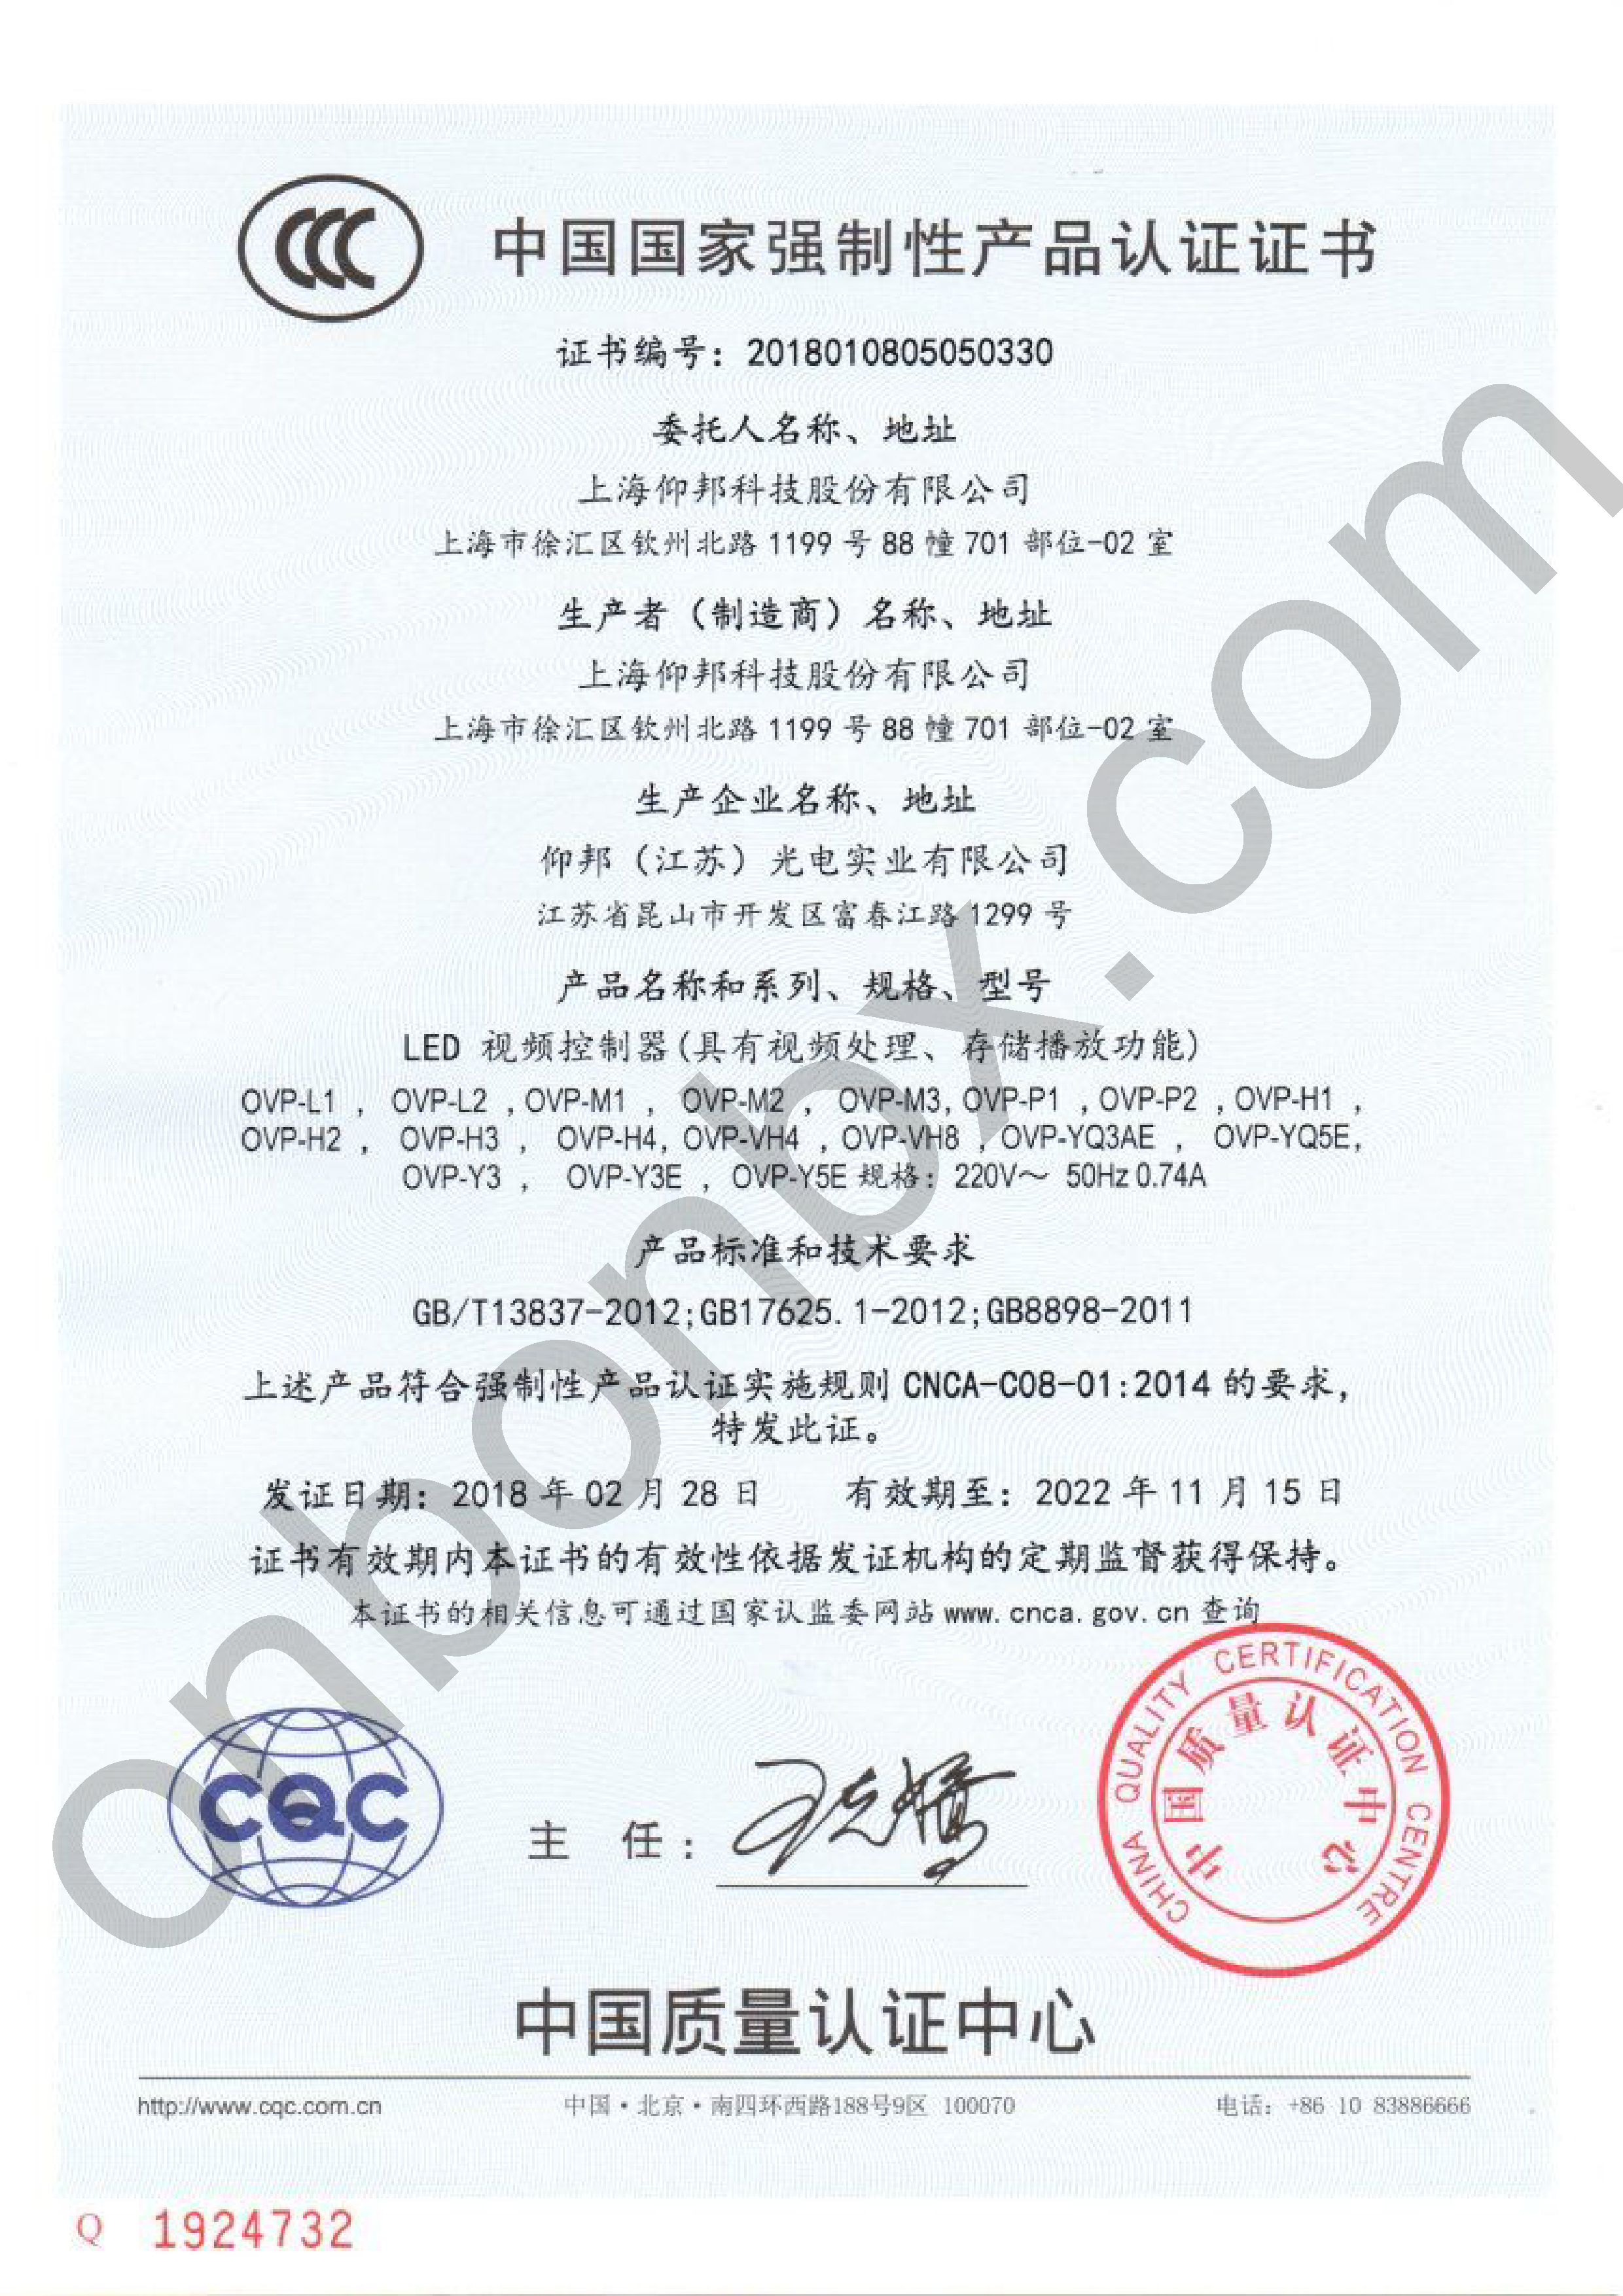 CCC Китайская обязательная сертификация